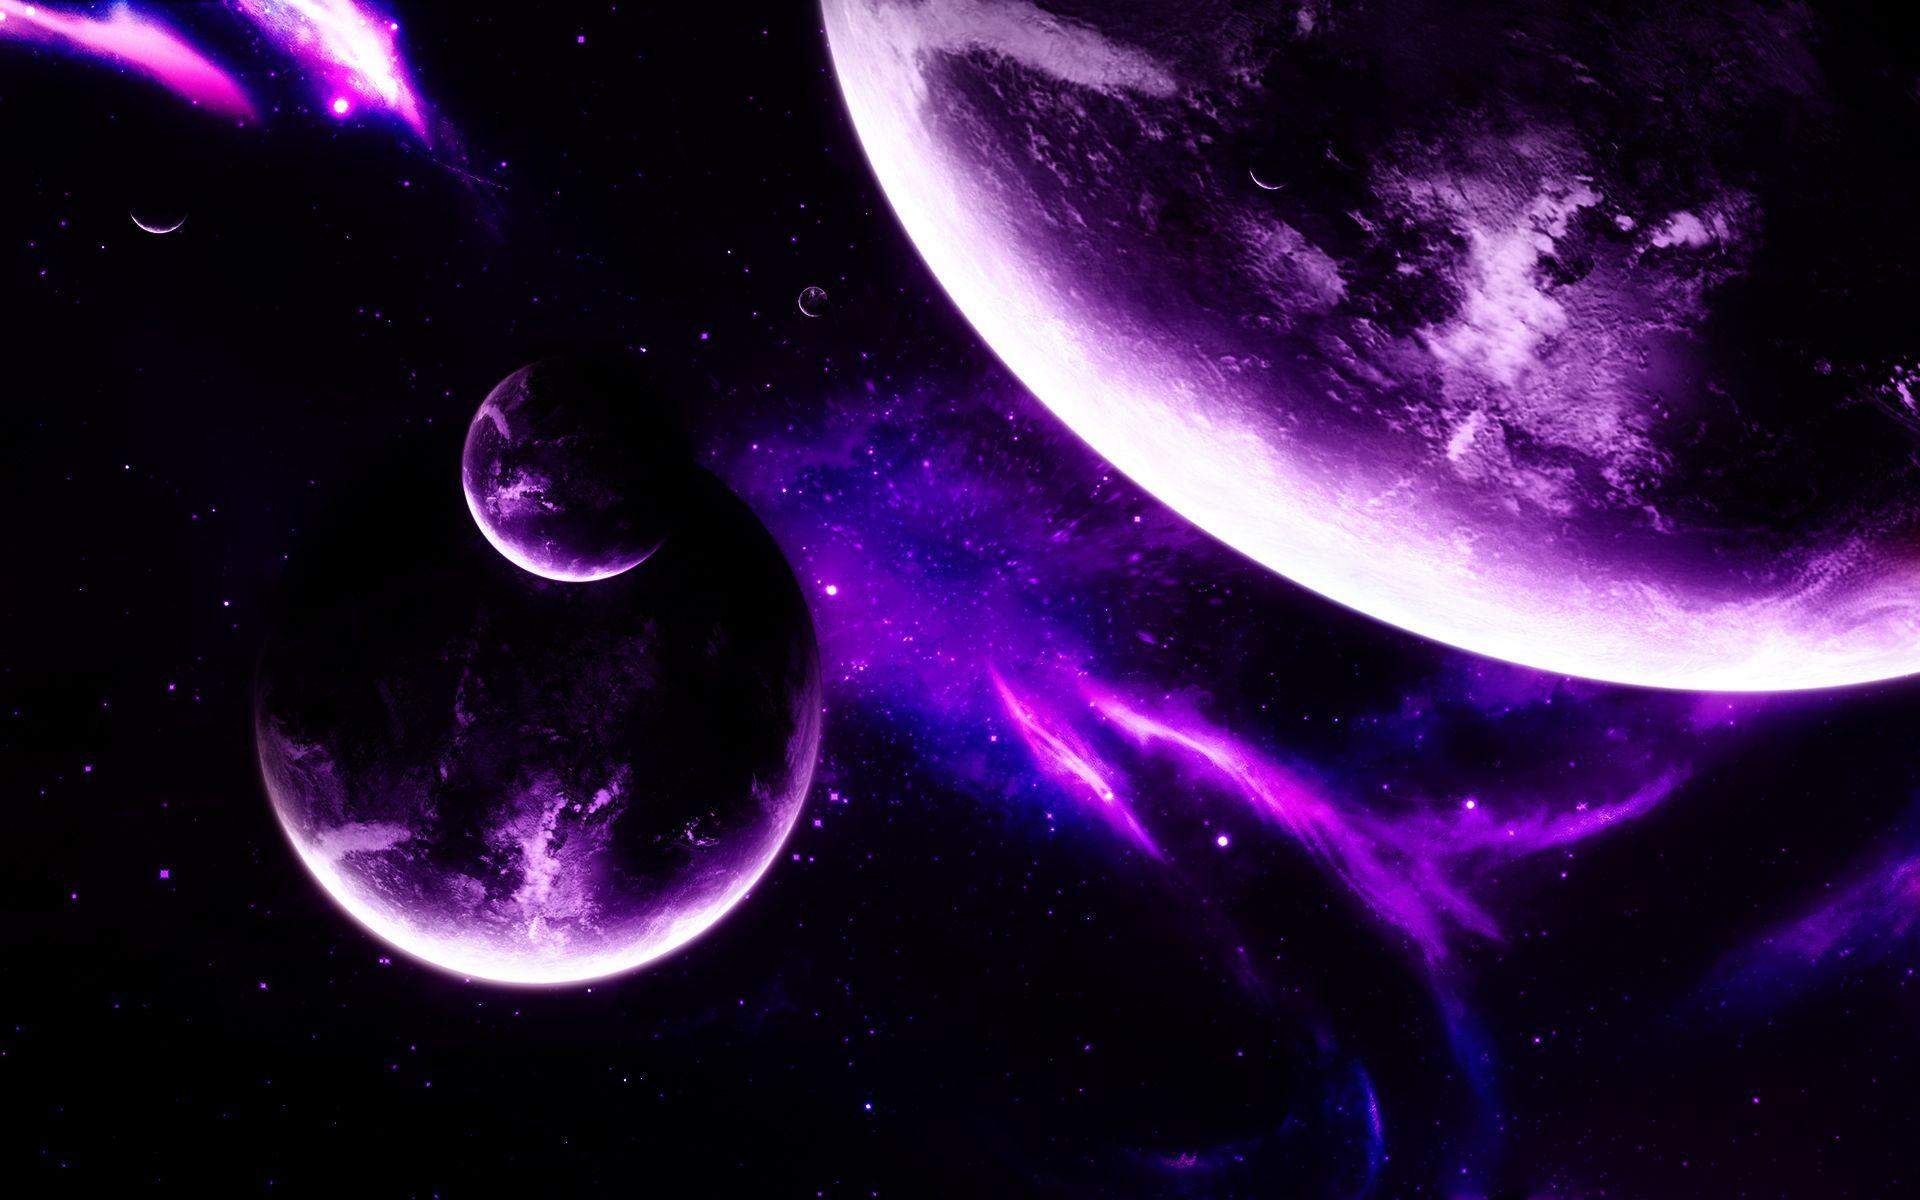 HD Purple Space Wallpaper. wallpaper. Space telescope